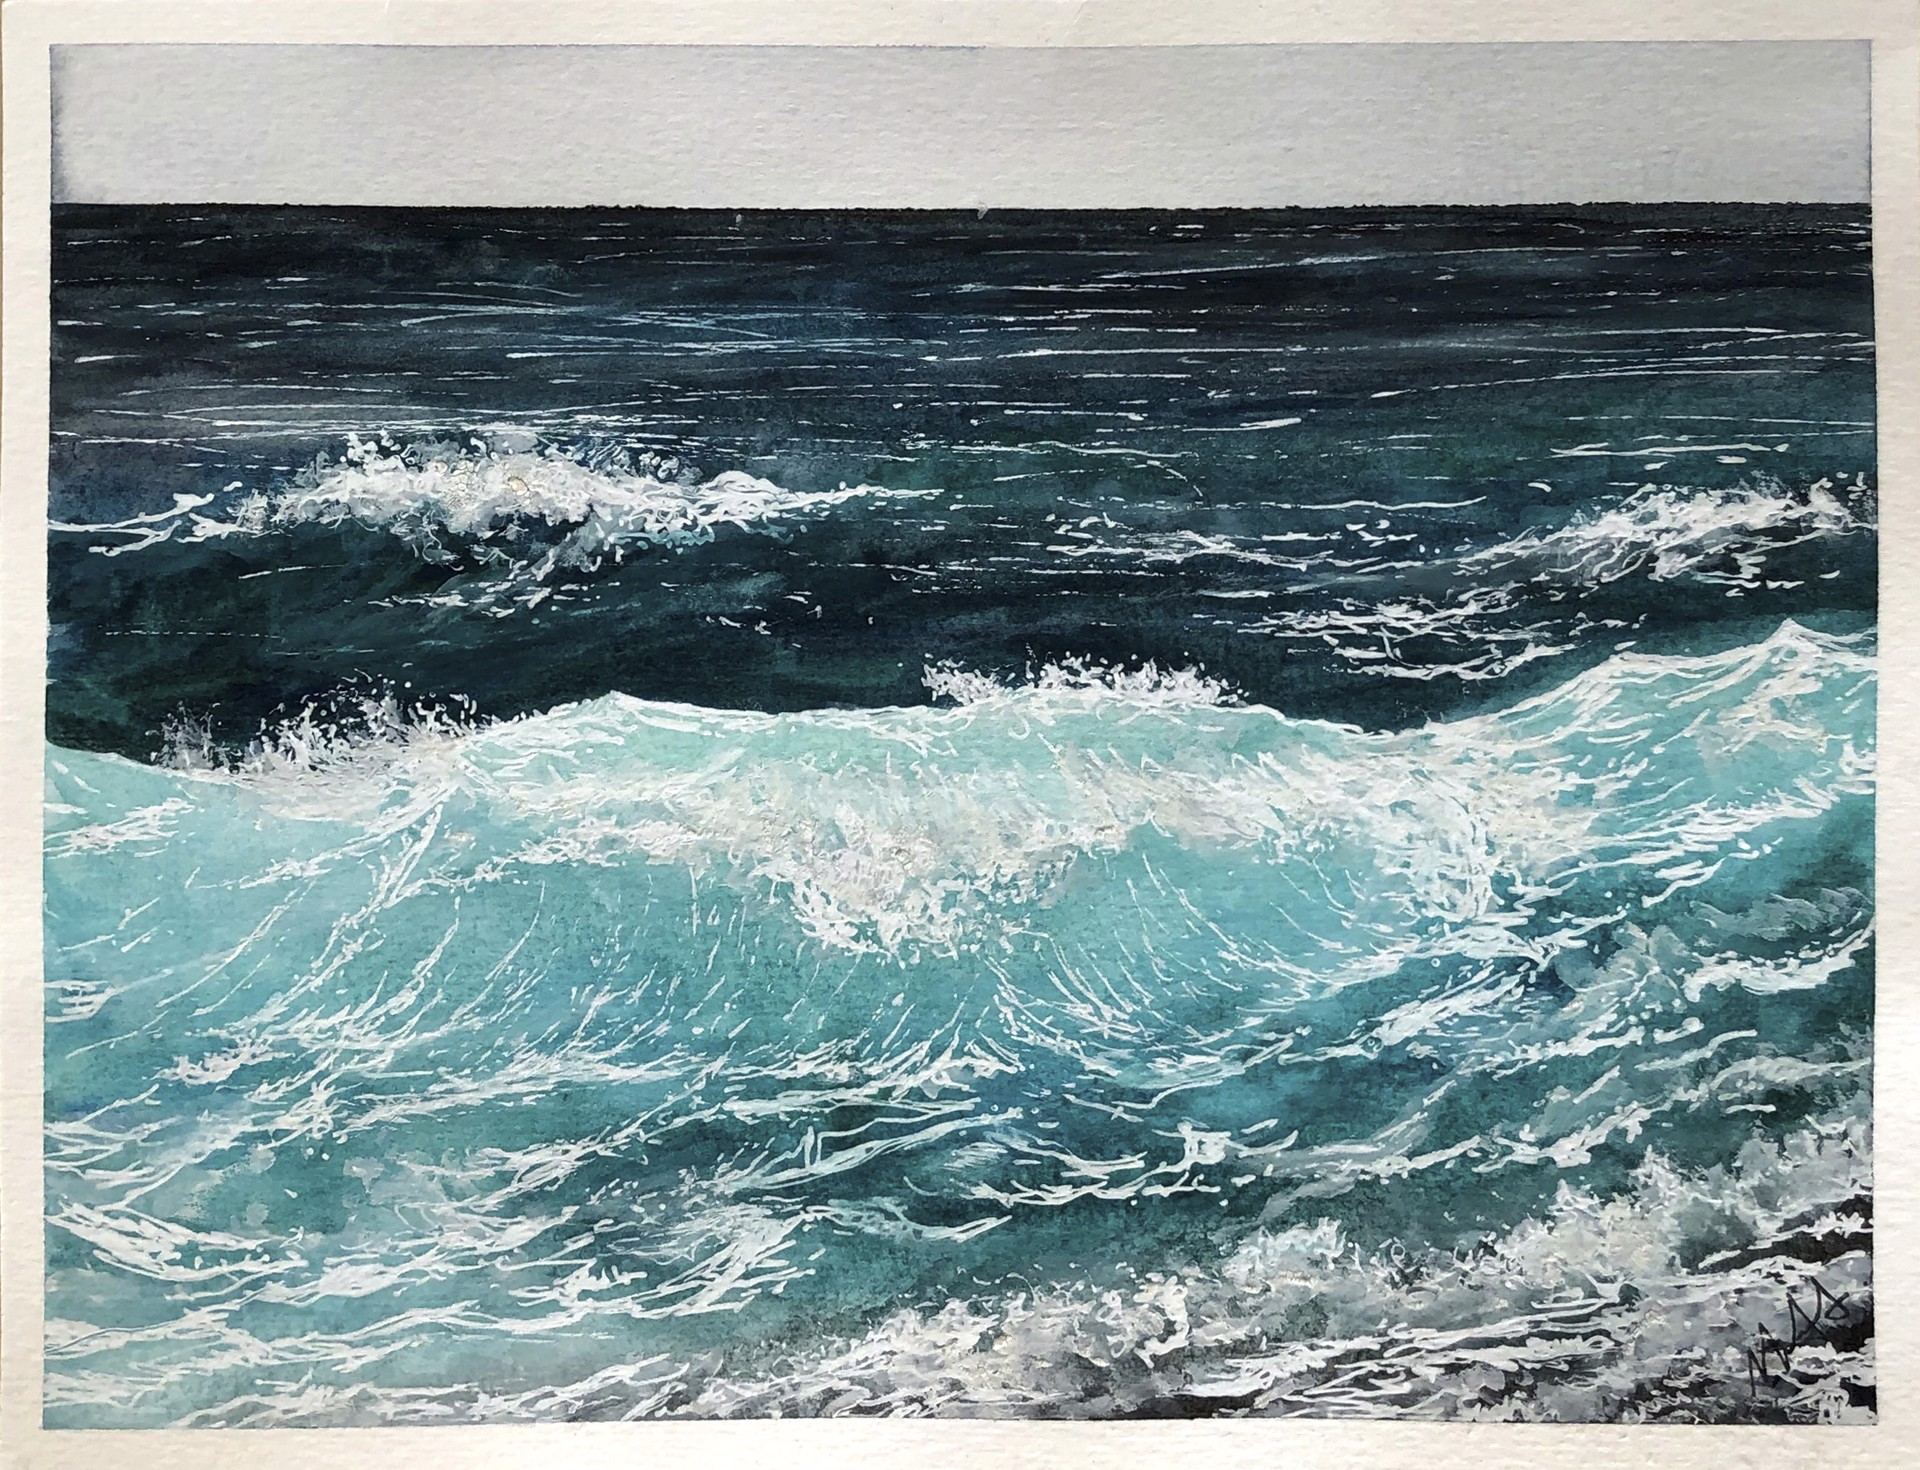 Ocean wave by Marina Alves